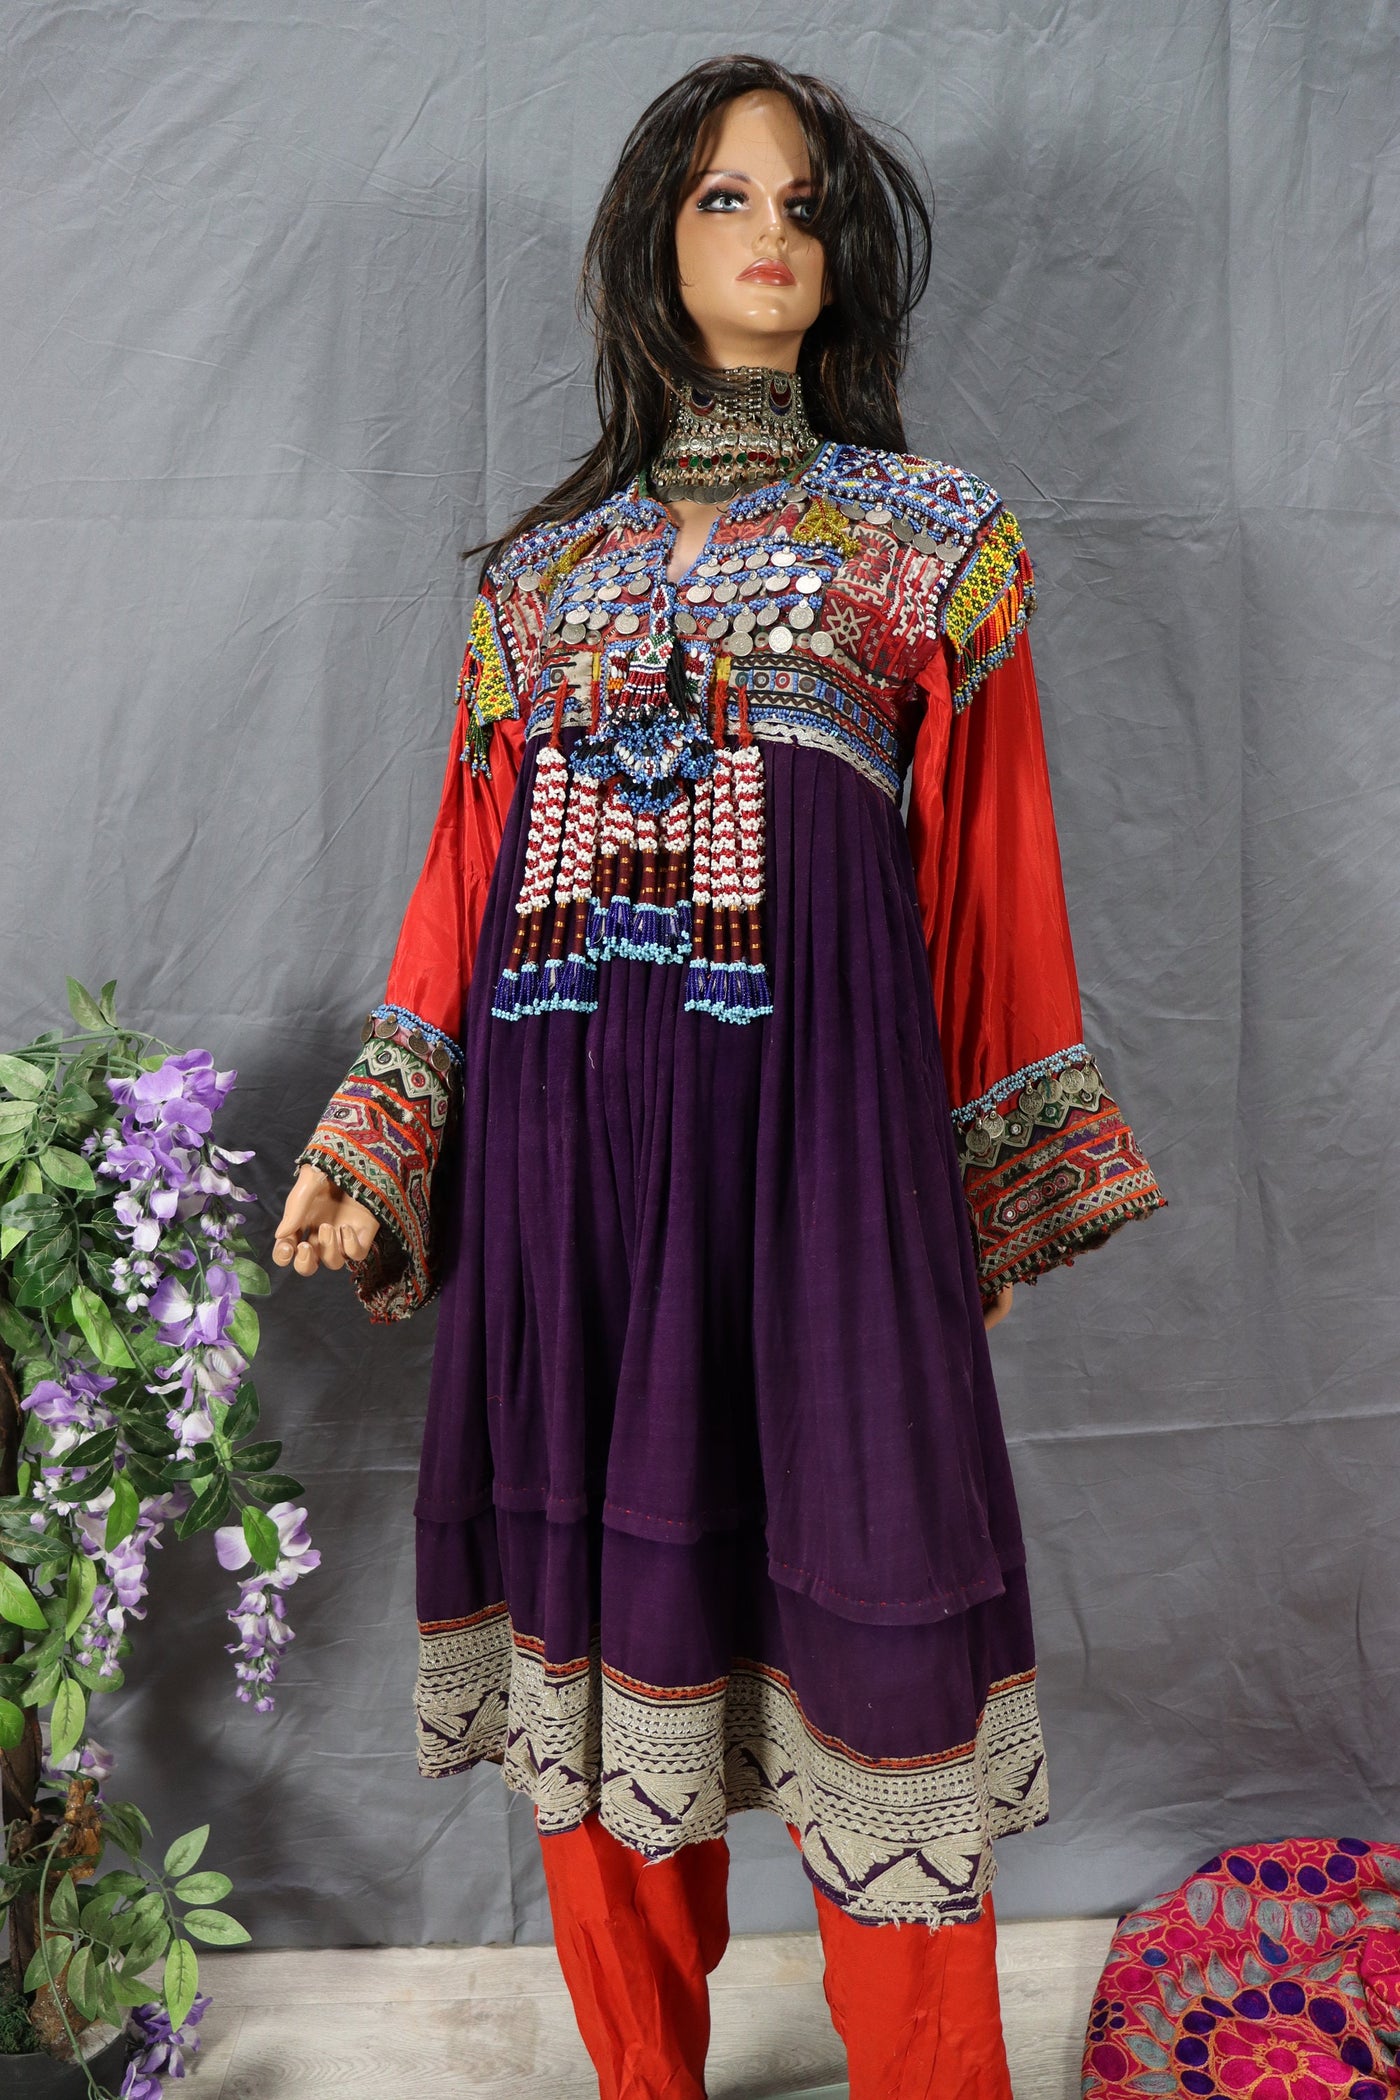 3 tilige antik Orient Nomaden kuchi frauen Tracht afghan kleid afghanistan hand bestickte kostüm Nr-B  Orientsbazar   